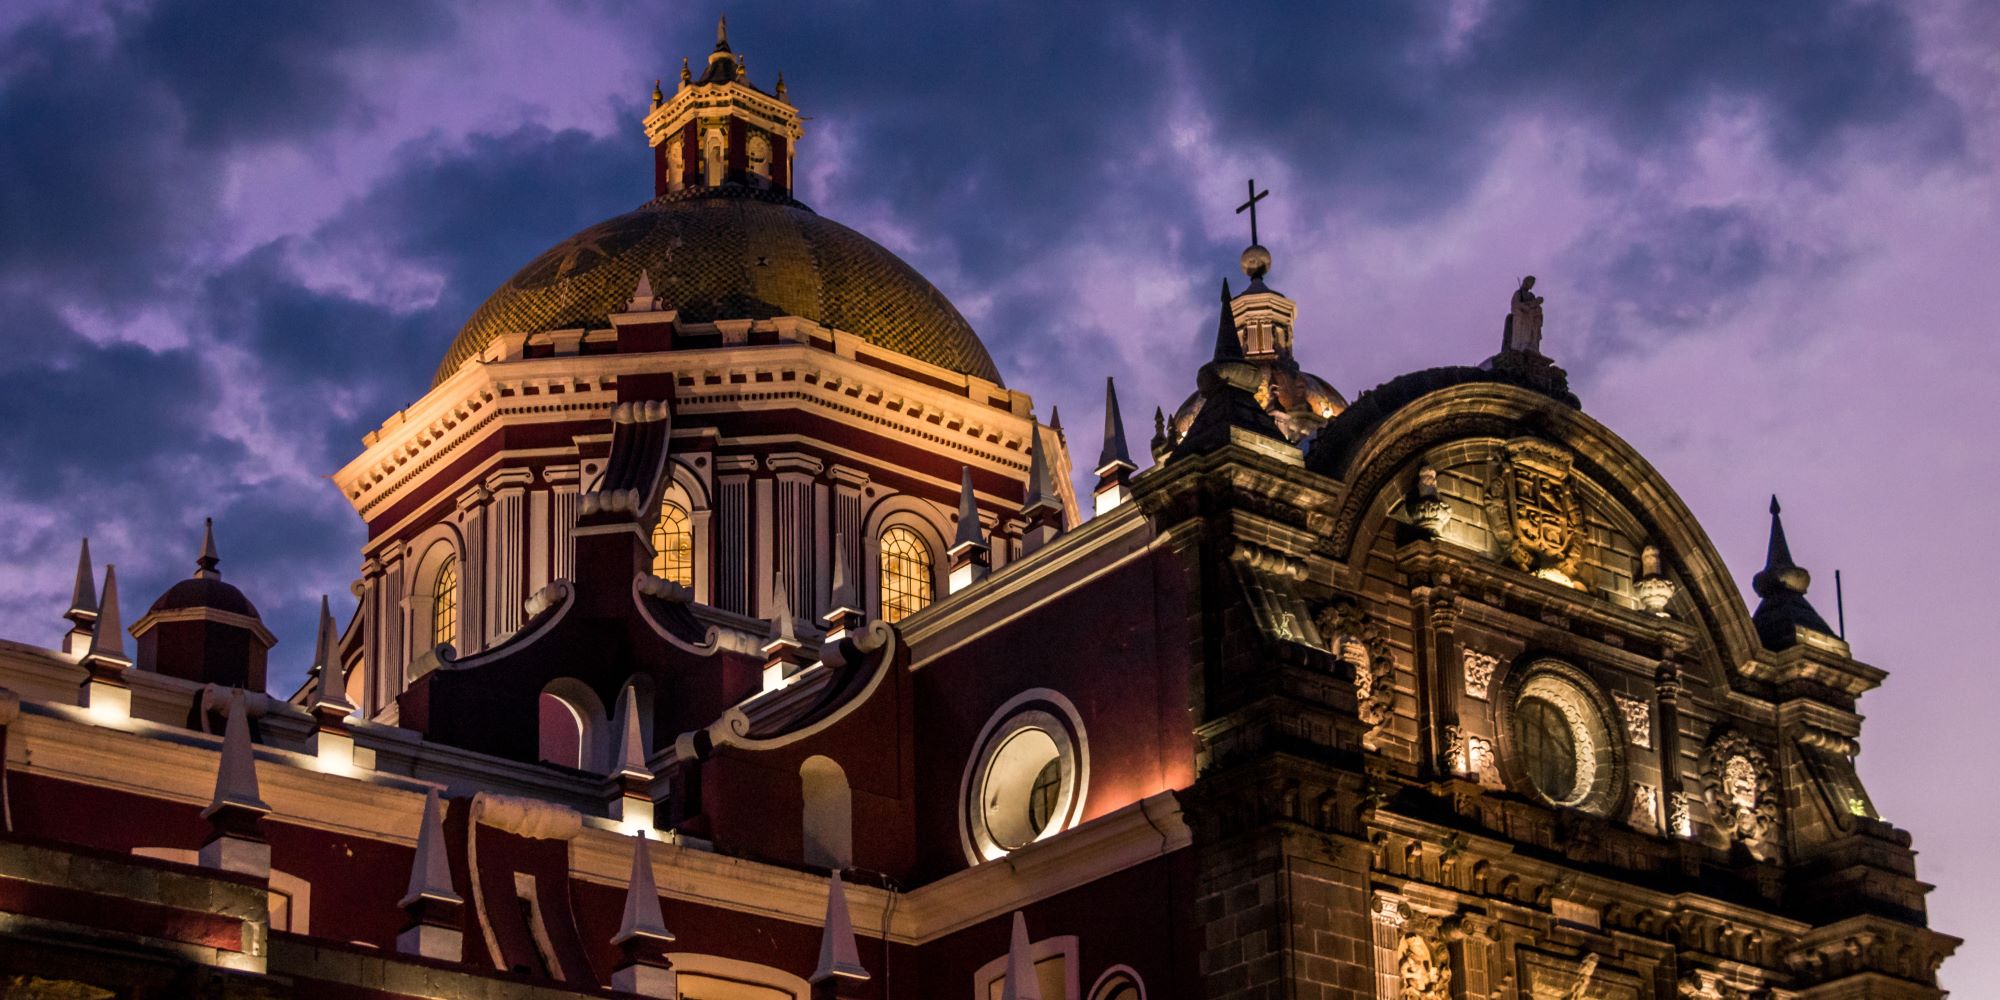 Catedrál de Puebla de noche. Iluminada por luces que dejan ver su fachada.